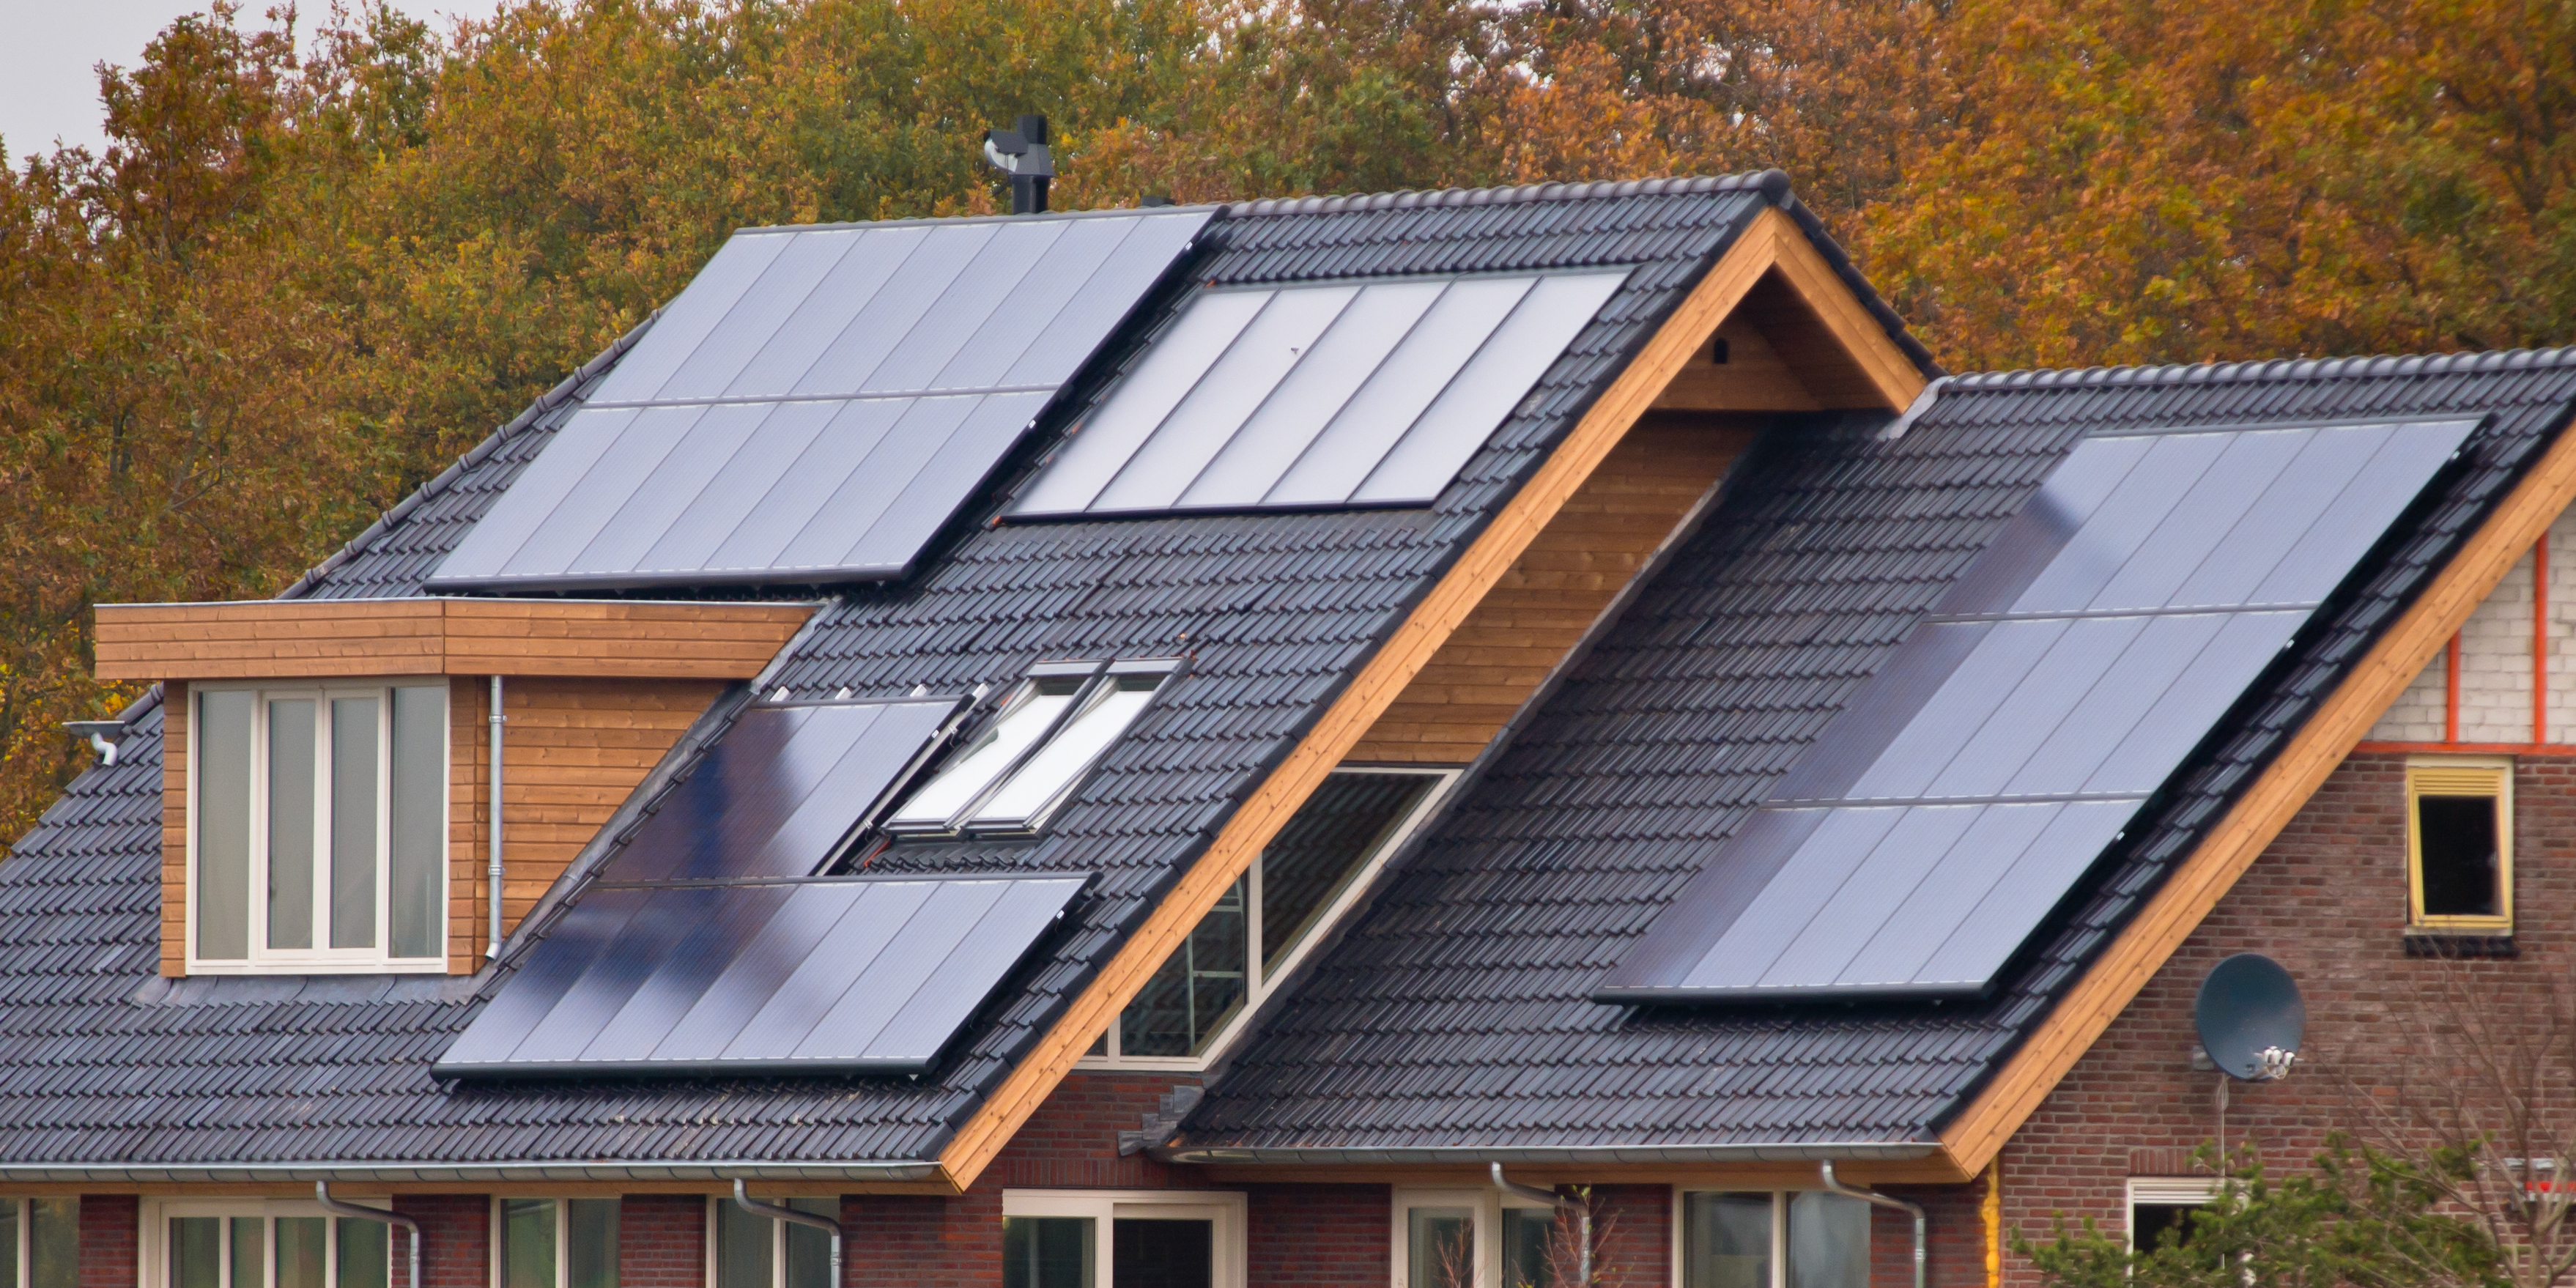 Bild Photovoltaikanlage Dach